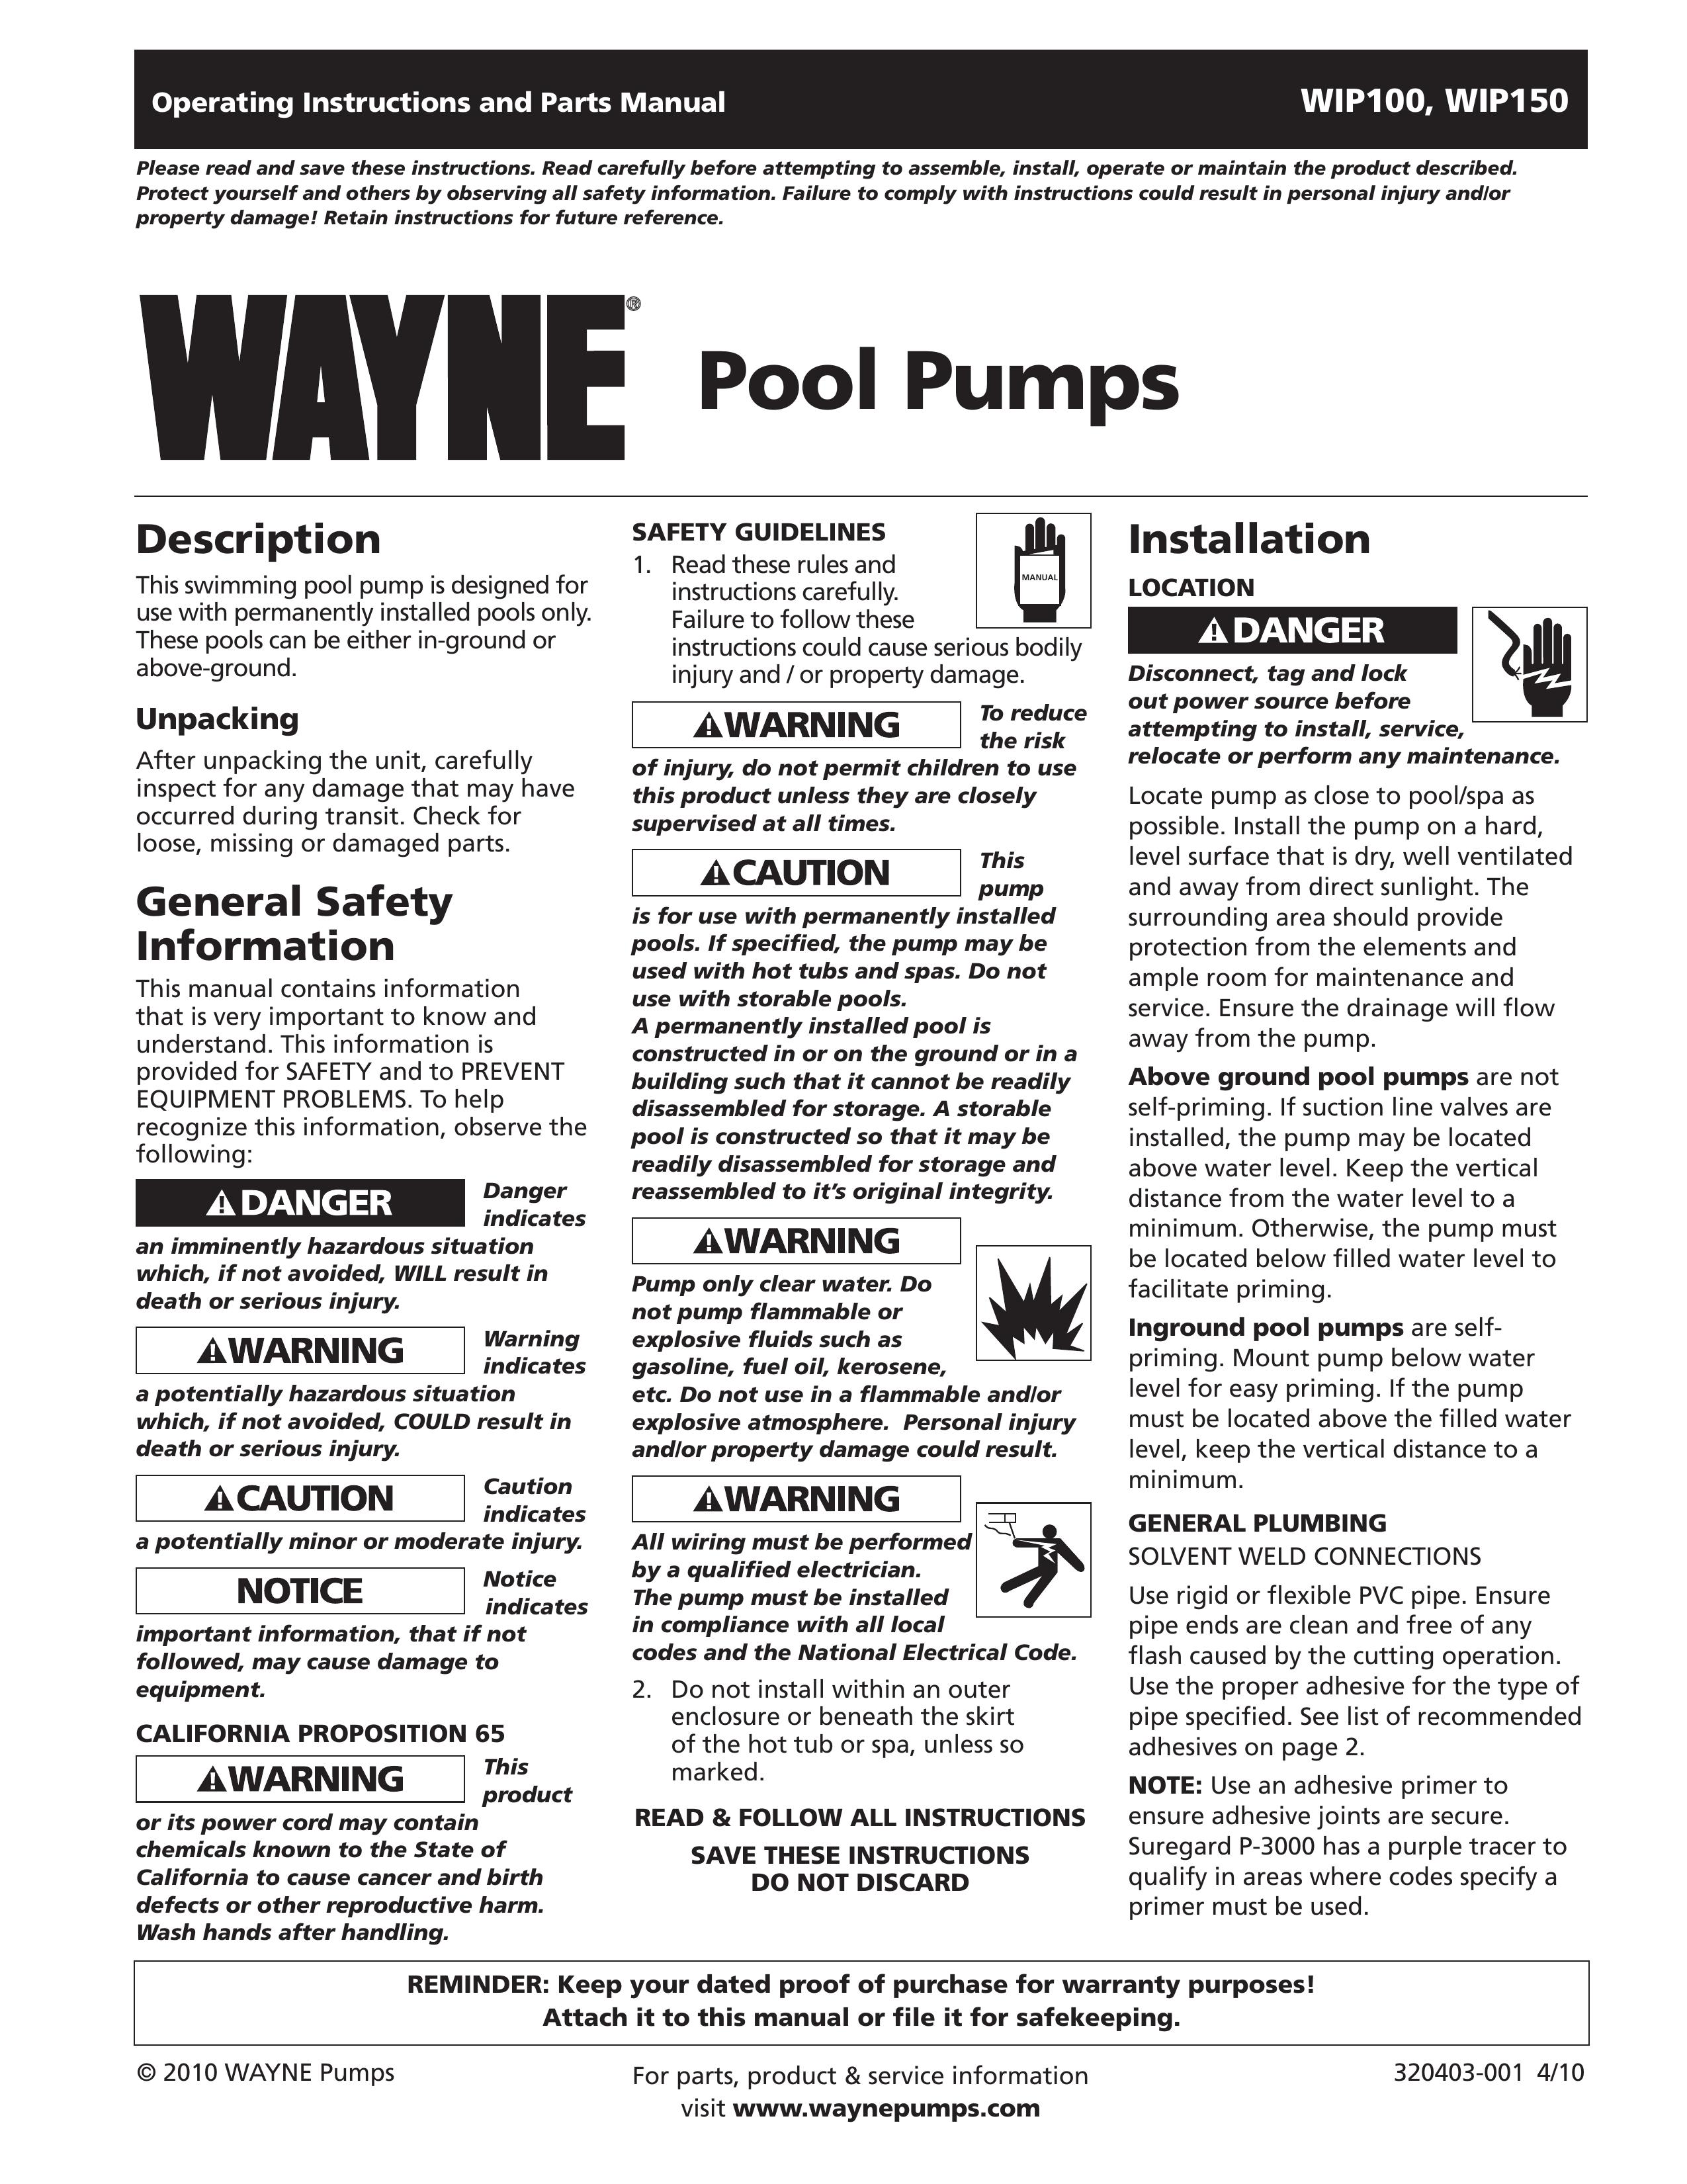 Wayne WIP100 Swimming Pool Pump User Manual